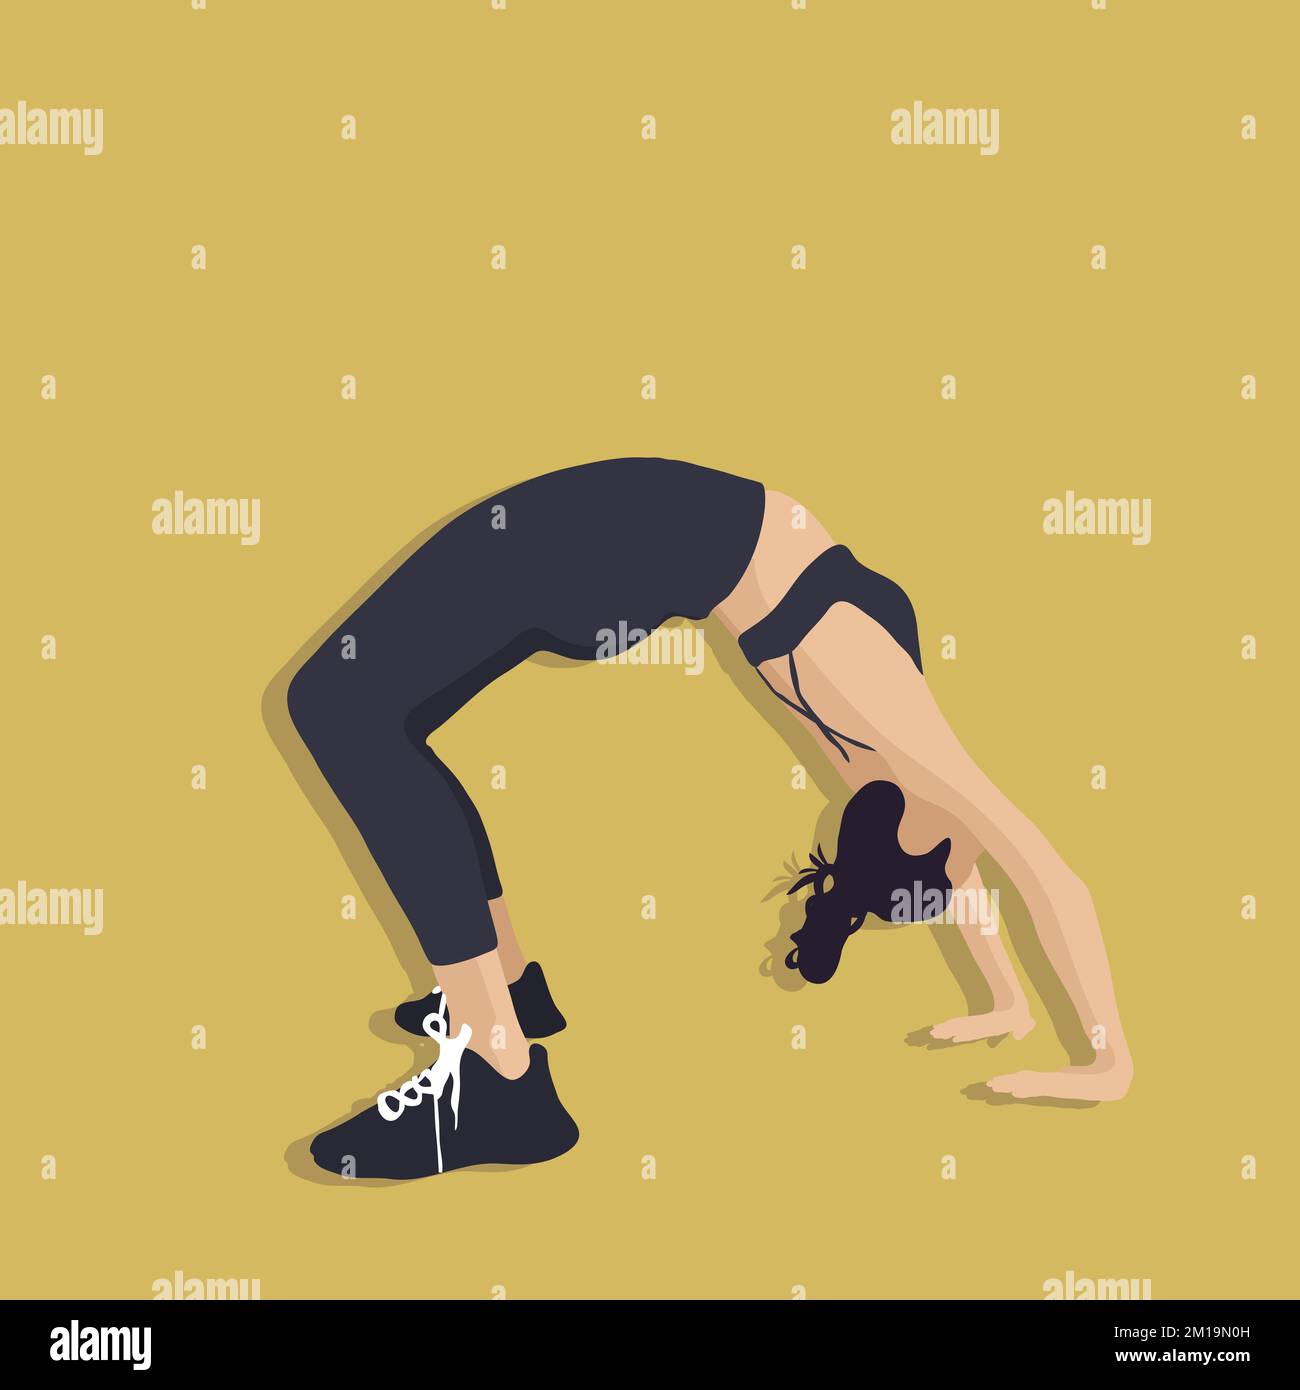 Girl doing bridge exercise vector illustration Stock Vector